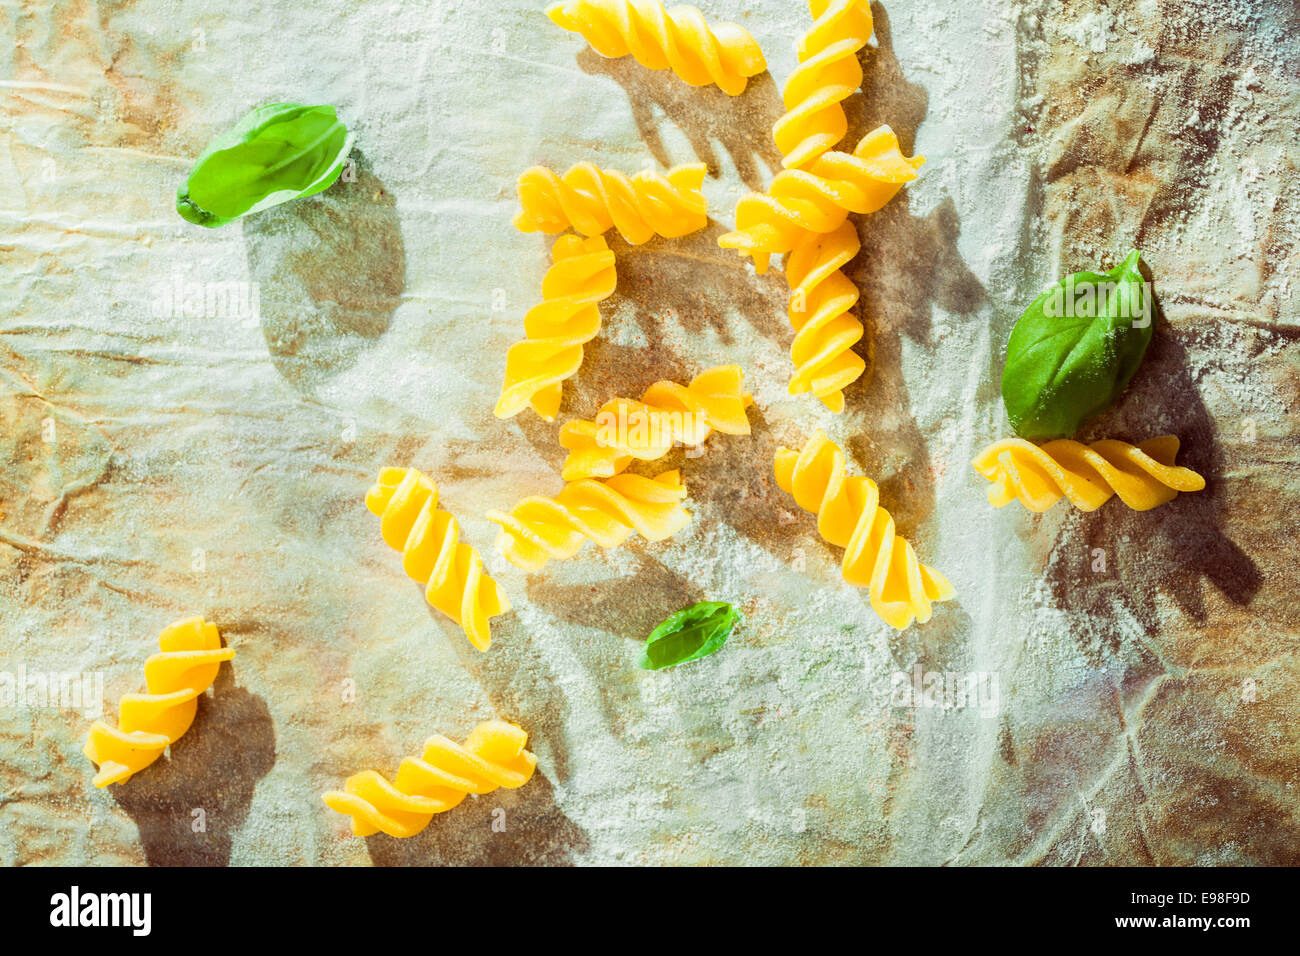 Vista aérea de la espiral fusilli pasta con hojas de albahaca fresca utilizada como ingrediente en la cocina tradicional italiana en arrugado papel sucio Foto de stock